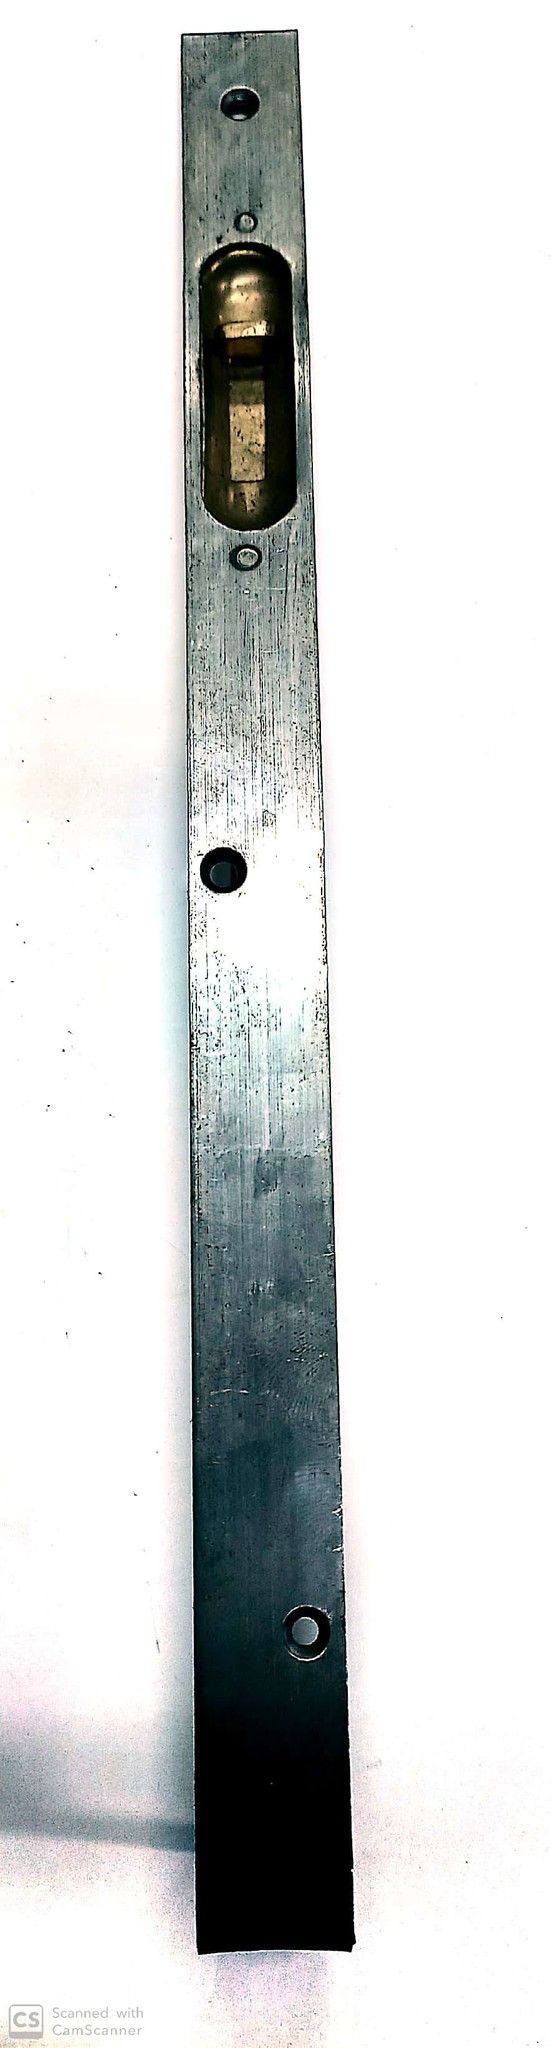 Catenaccio ad unghia cm 30 frontale mm 20 in ferro grezzo serie pesante